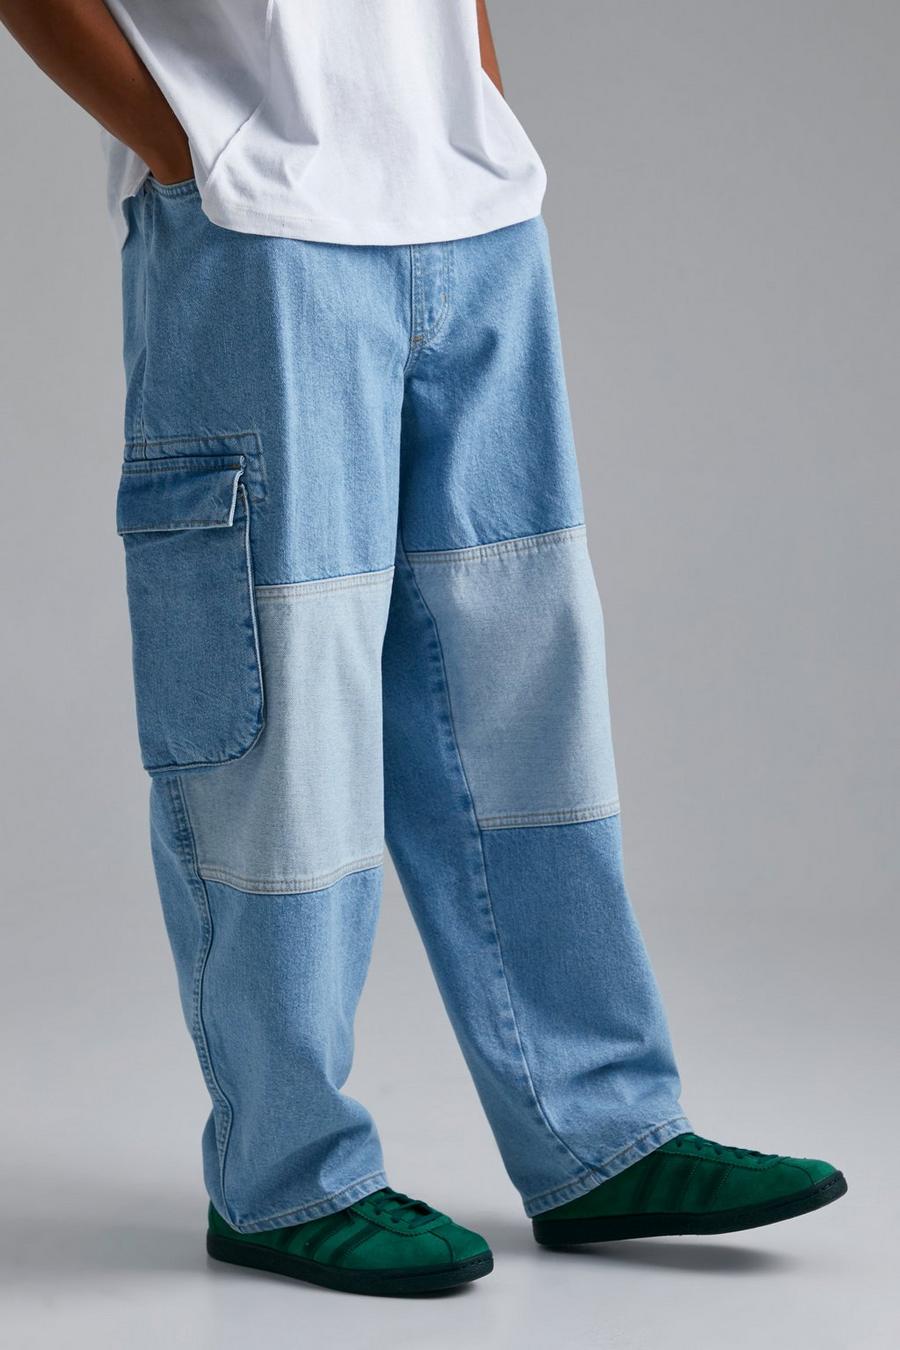 Lockere Skate Cargo-Jeans mit Schnalle, Light blue